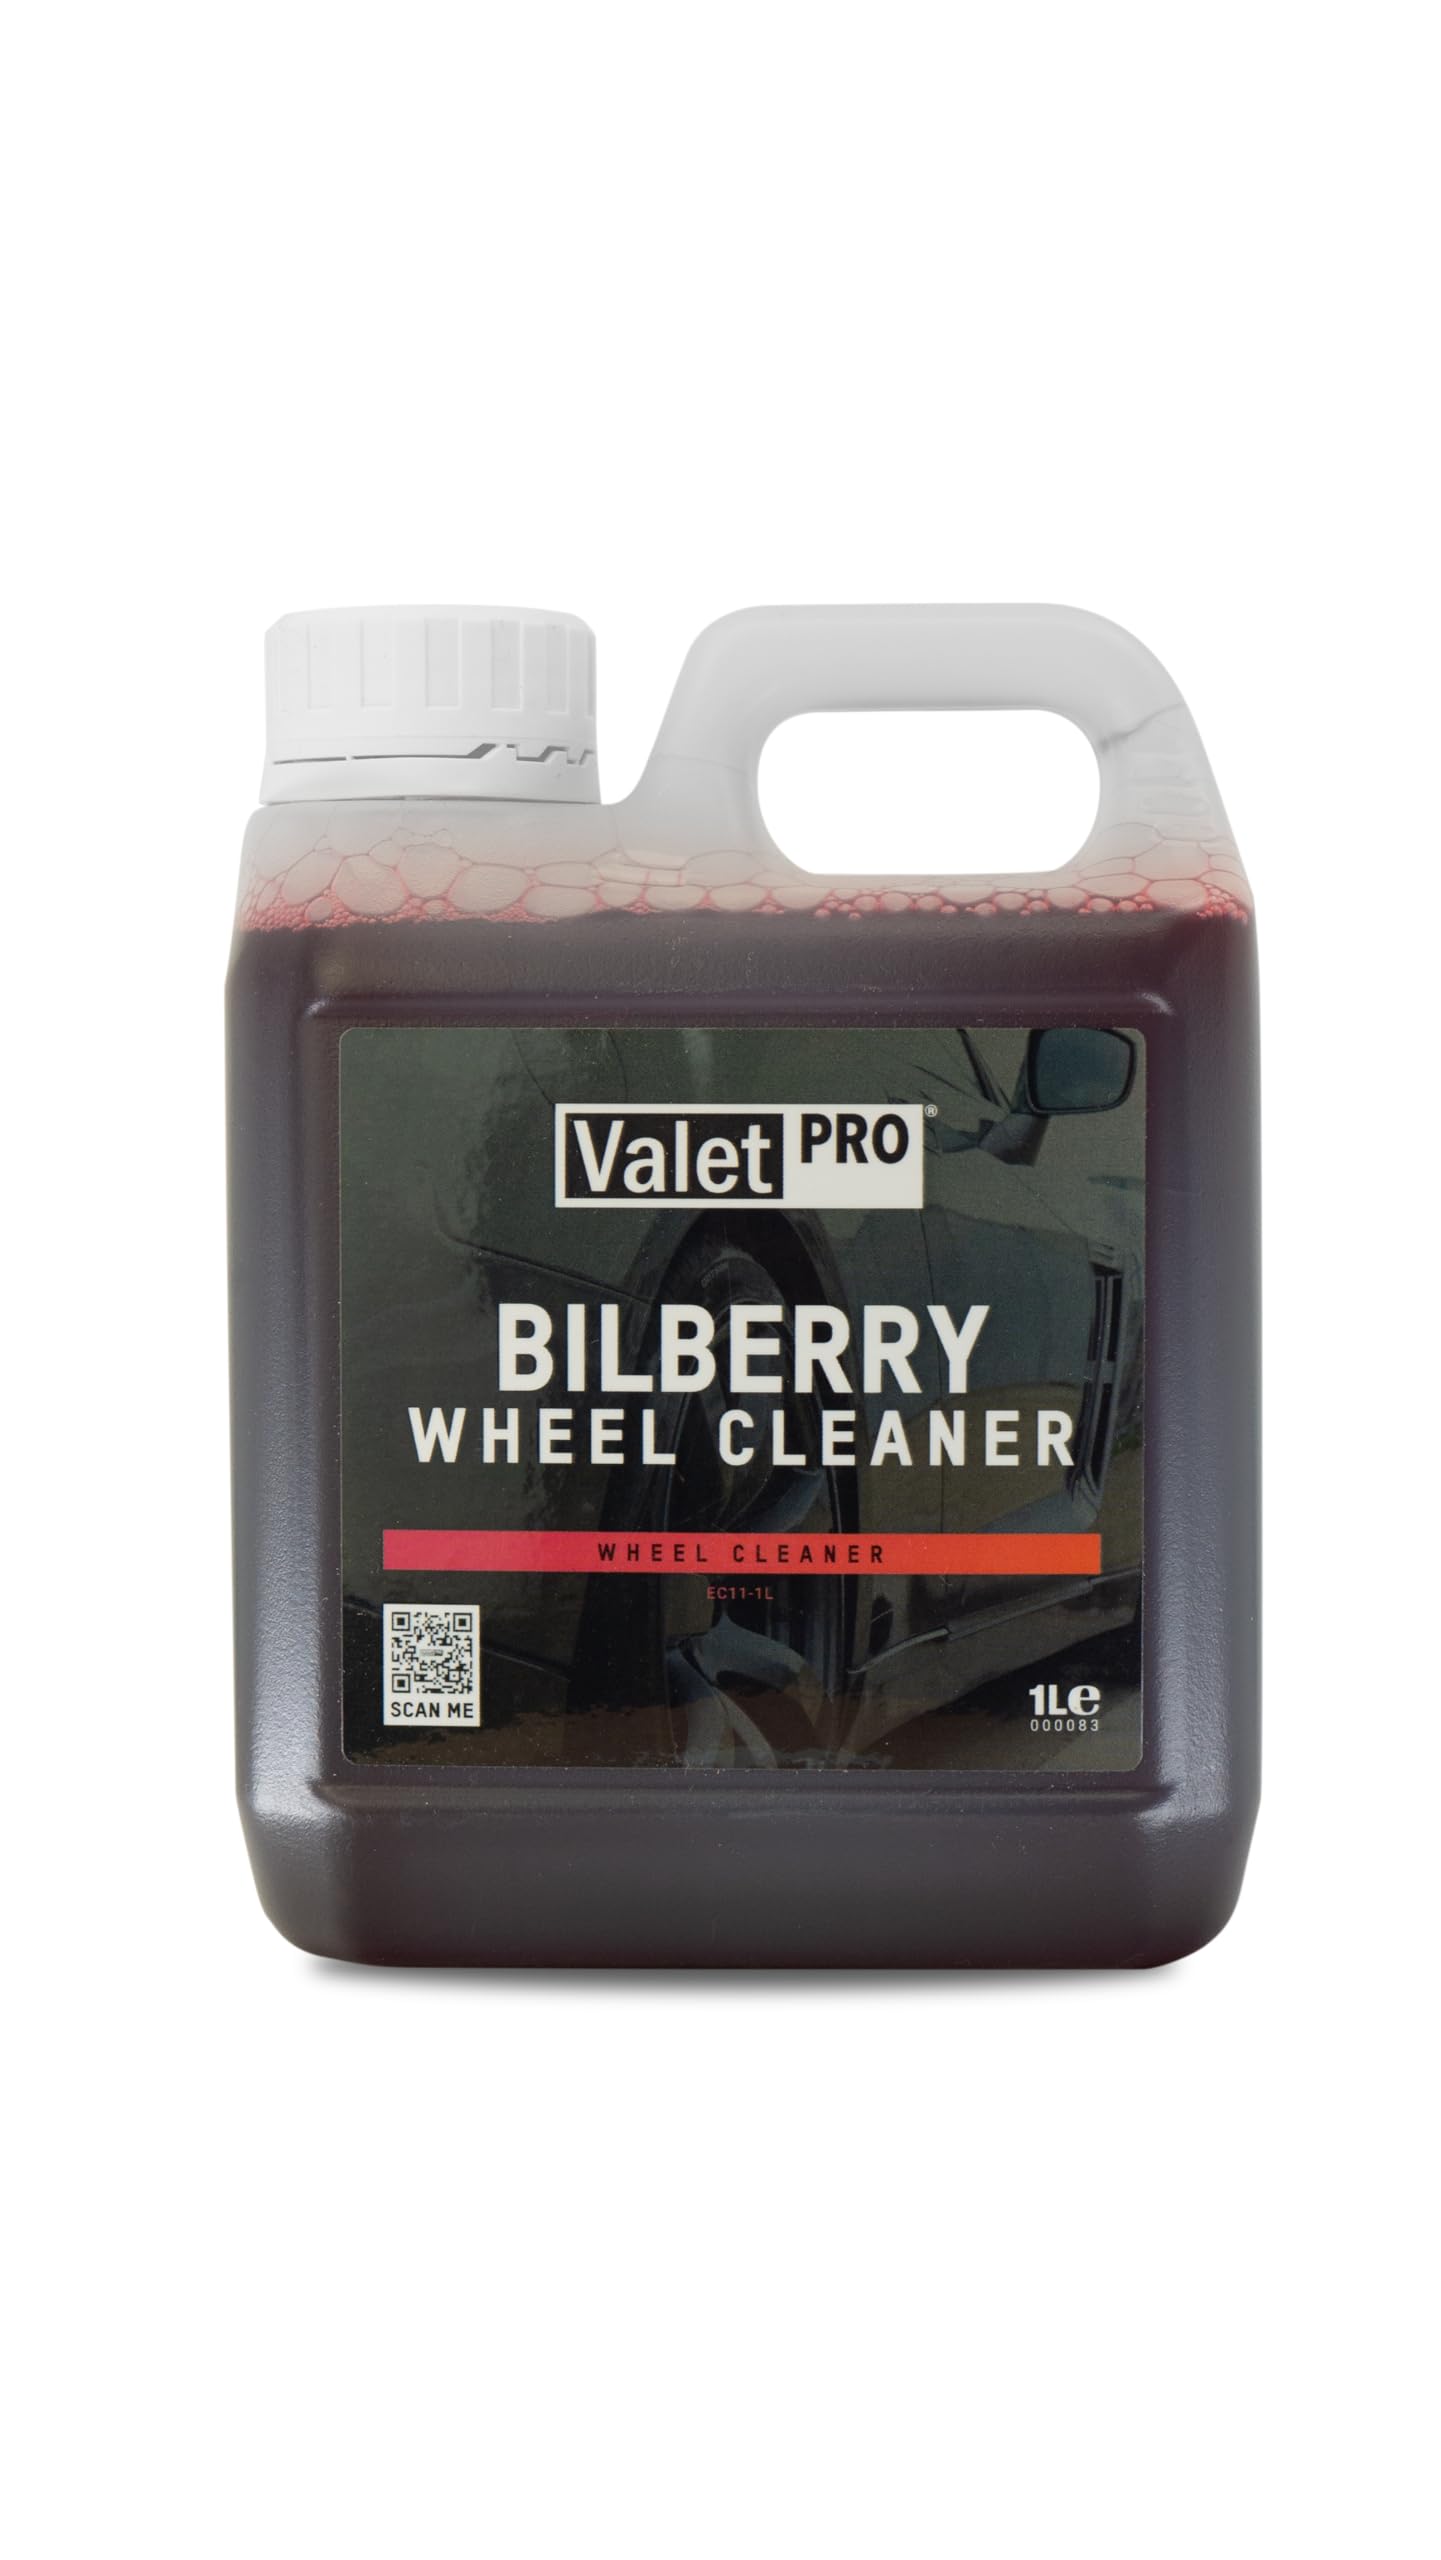 ValetPRO Bilberry Wheel Cleaner 1 Liter von Valet Pro